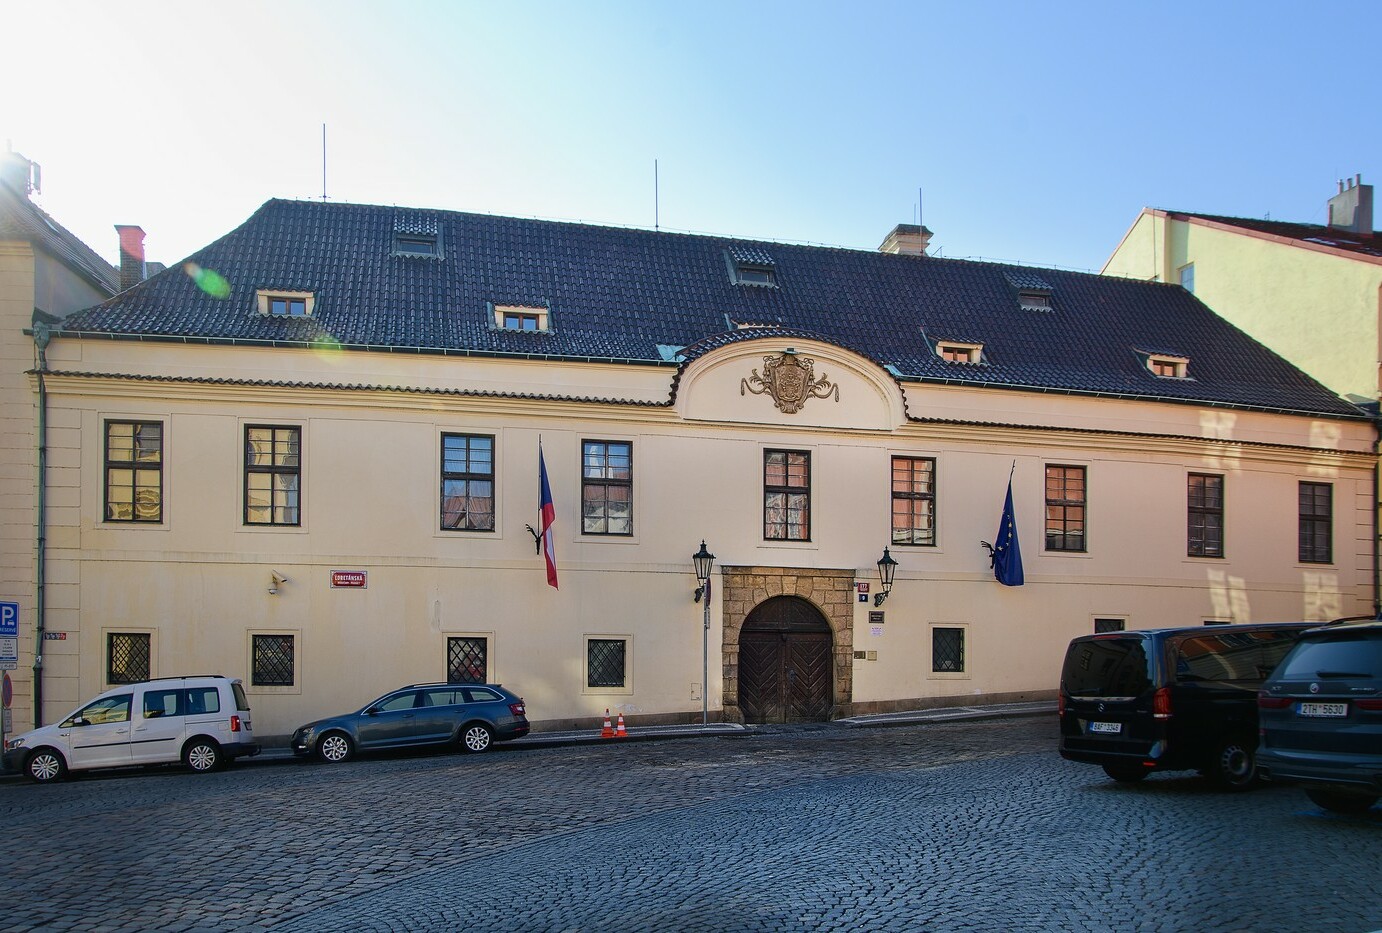 Veřejnosti se dnes otevřou Sněmovna, Senát i vládní Hrzánský palác v Praze